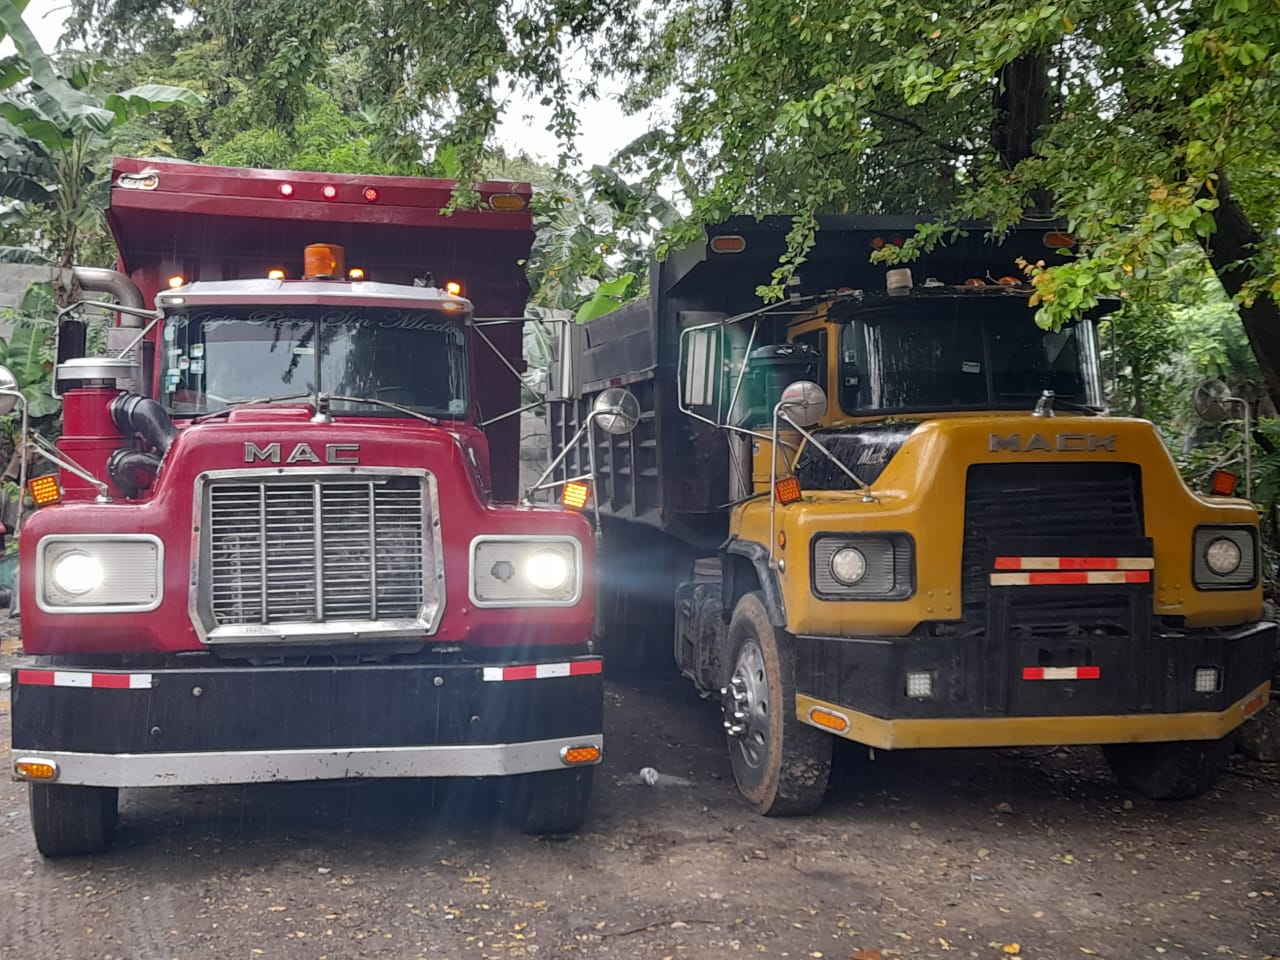 camiones y vehiculos pesados - Camión Mack amarillo año 89 y camión Mack rojo año 84